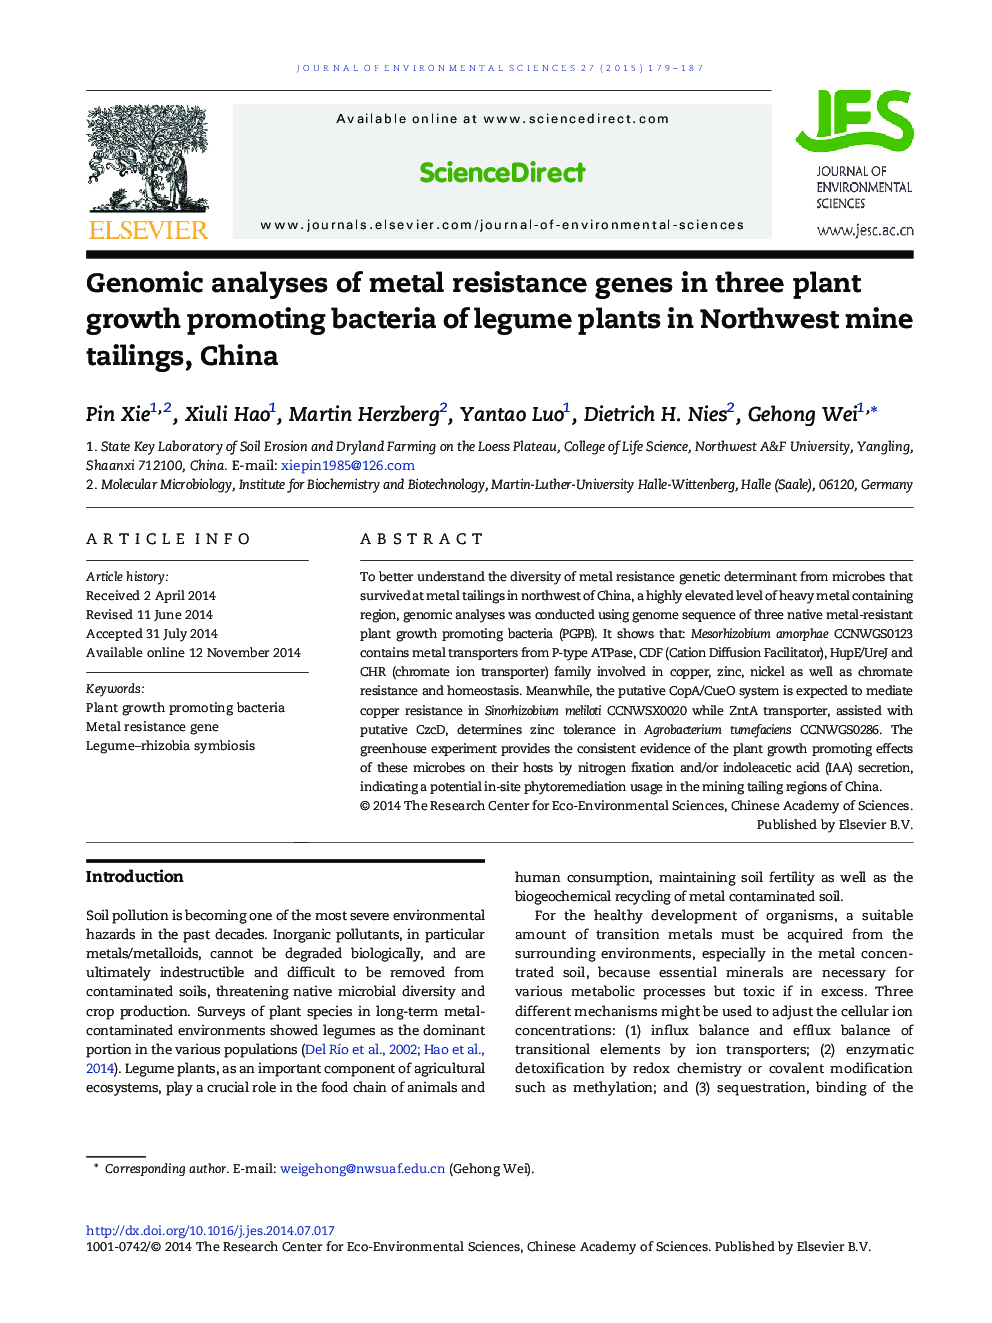 تجزیه و تحلیل ژنومی از ژن های مقاوم در برابر فلزات در سه بوته پرورش گیاهان زیتون در بوته های معدنی شمال غربی، چین 